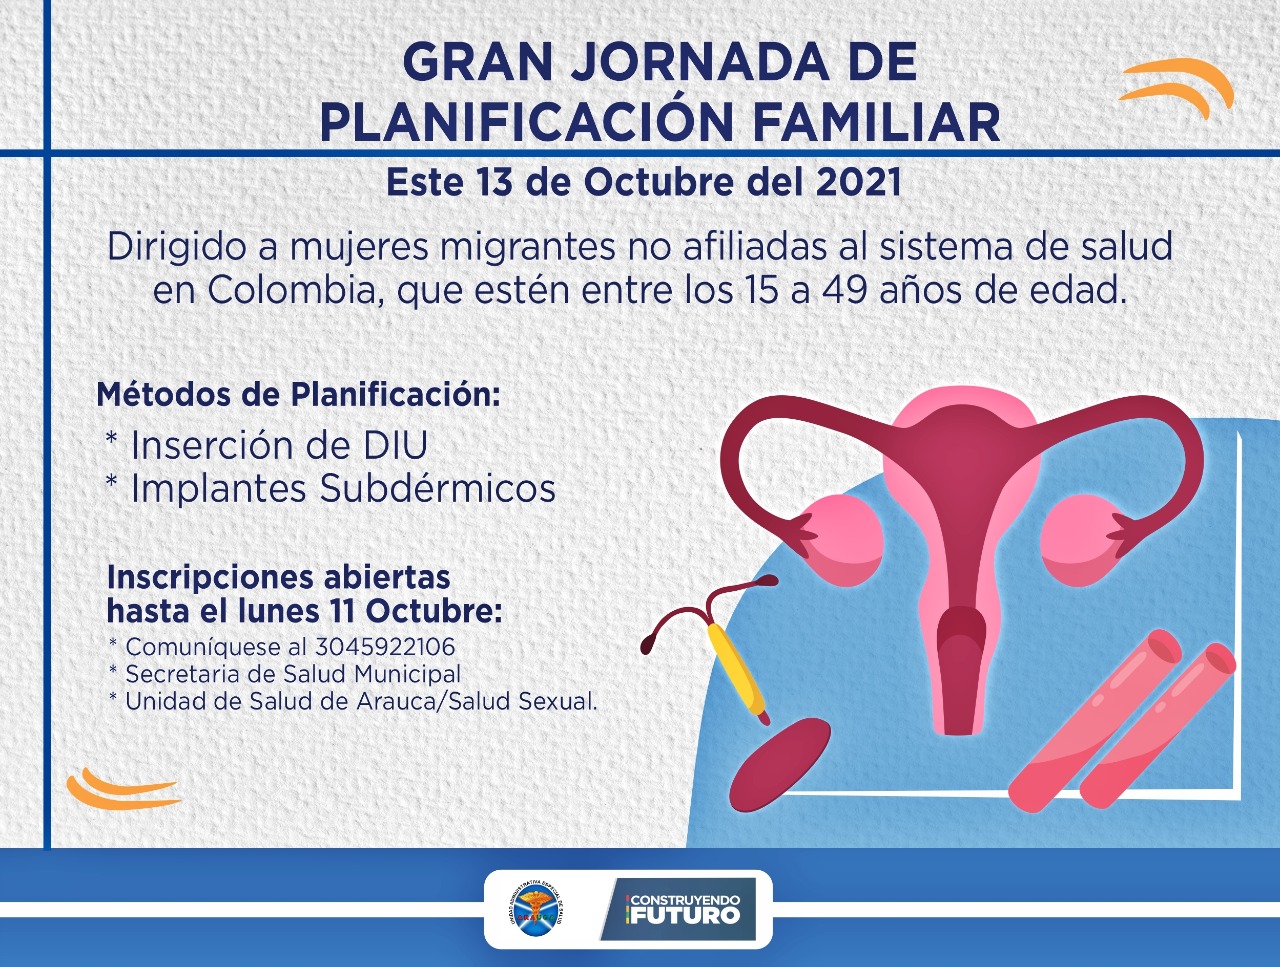 Unidad de Salud de Arauca realizará jornada de planificación familiar a mujeres adolescentes y jóvenes migrantes